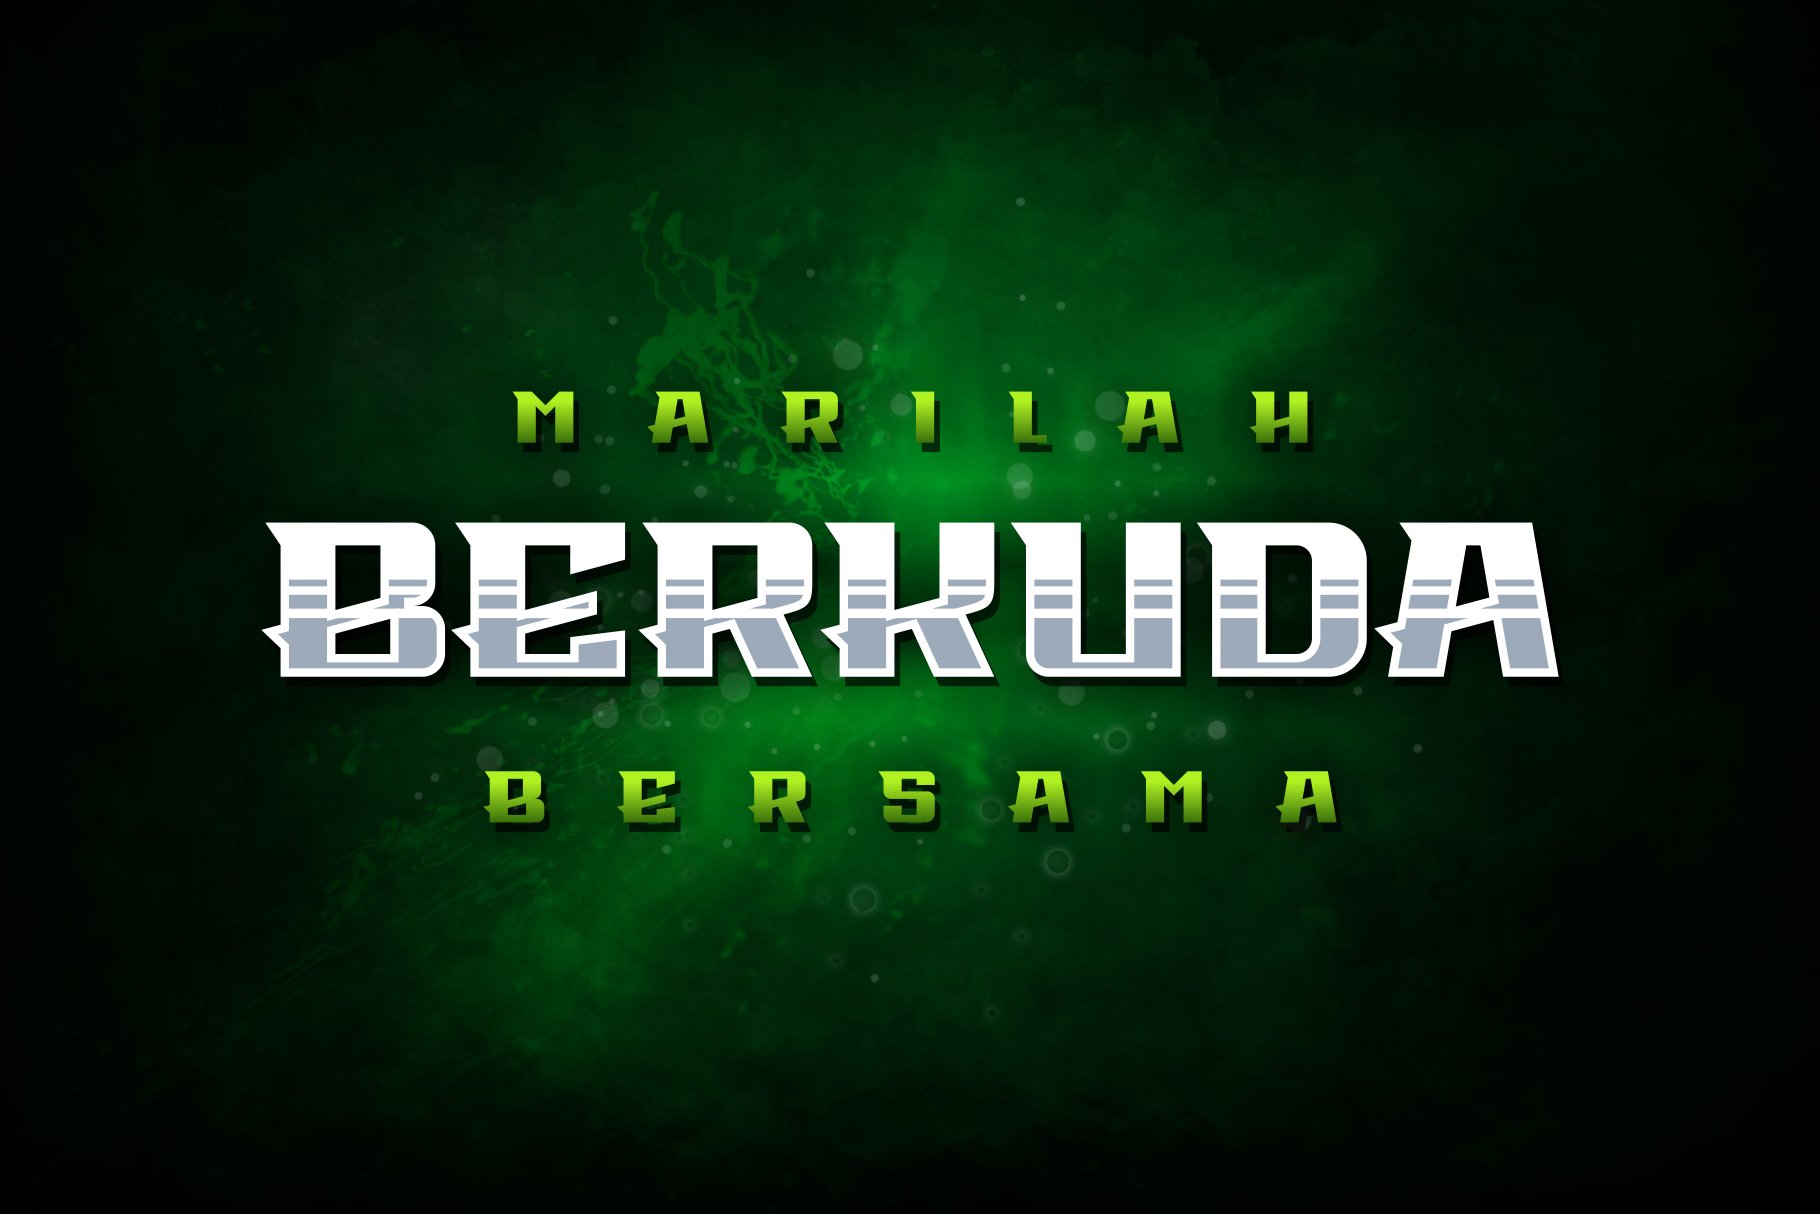 Berkuda Font cover image.